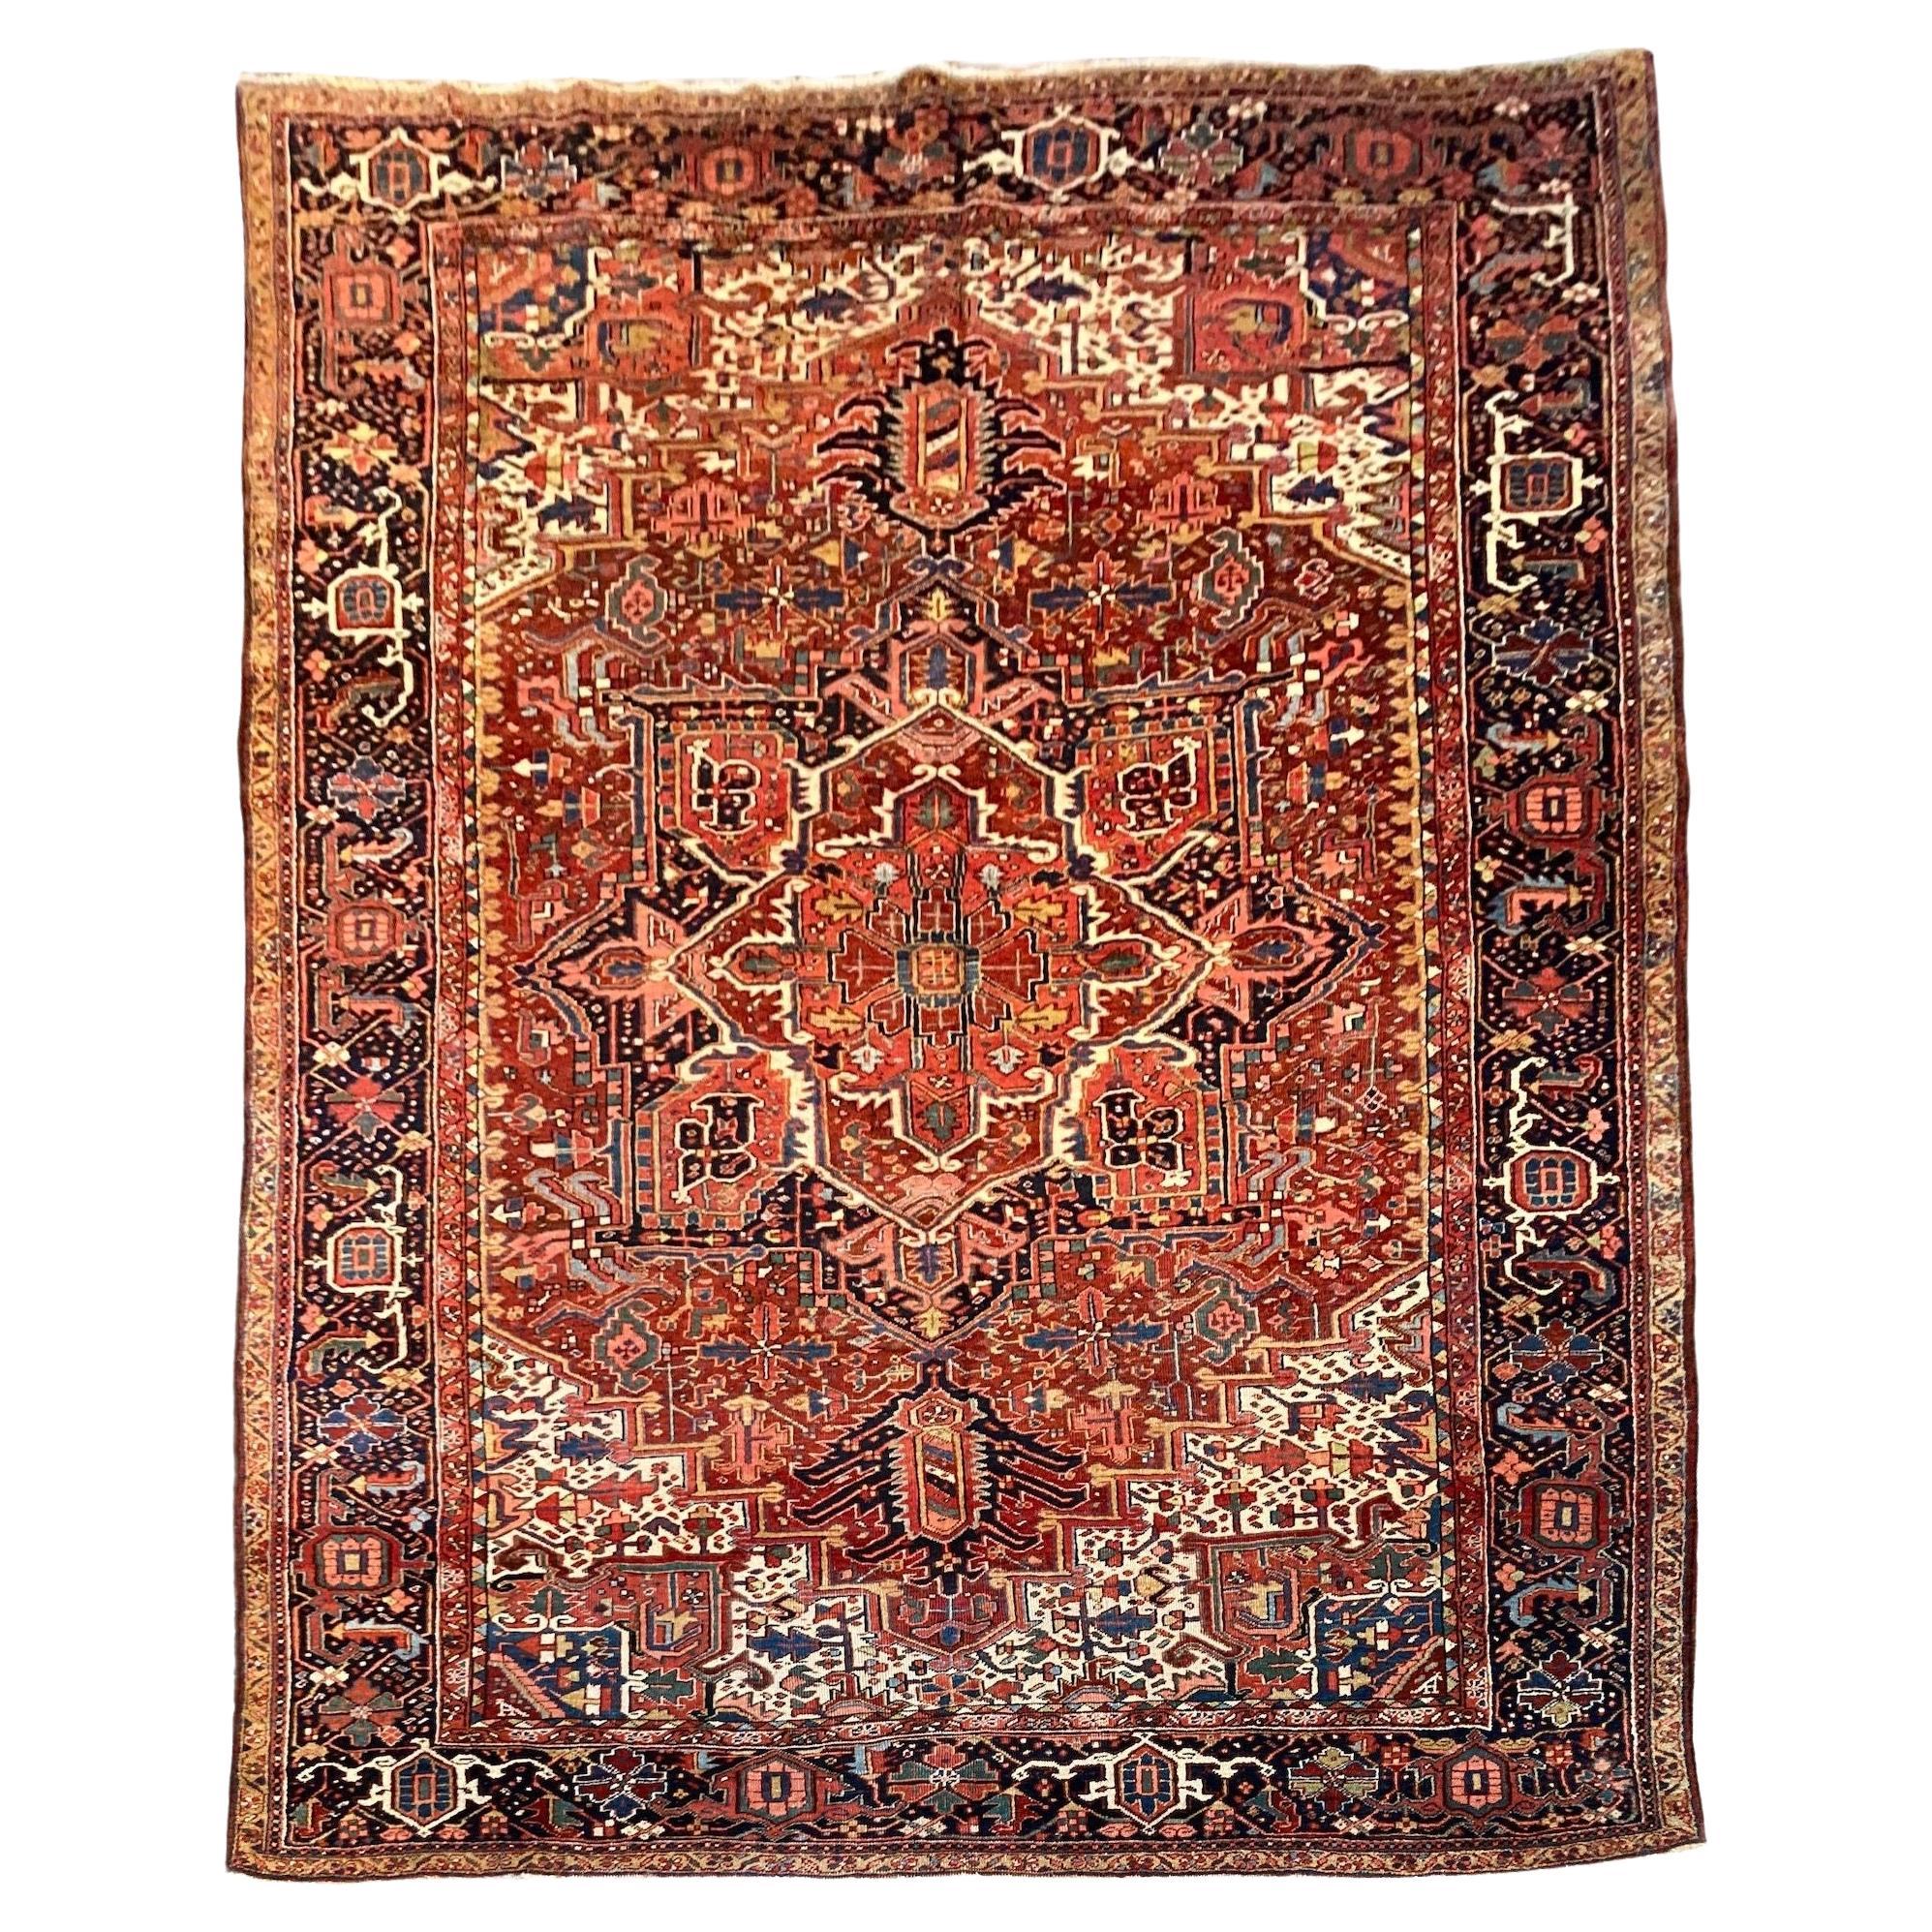 Antique Heriz Carpet 3.78m x 2.81m